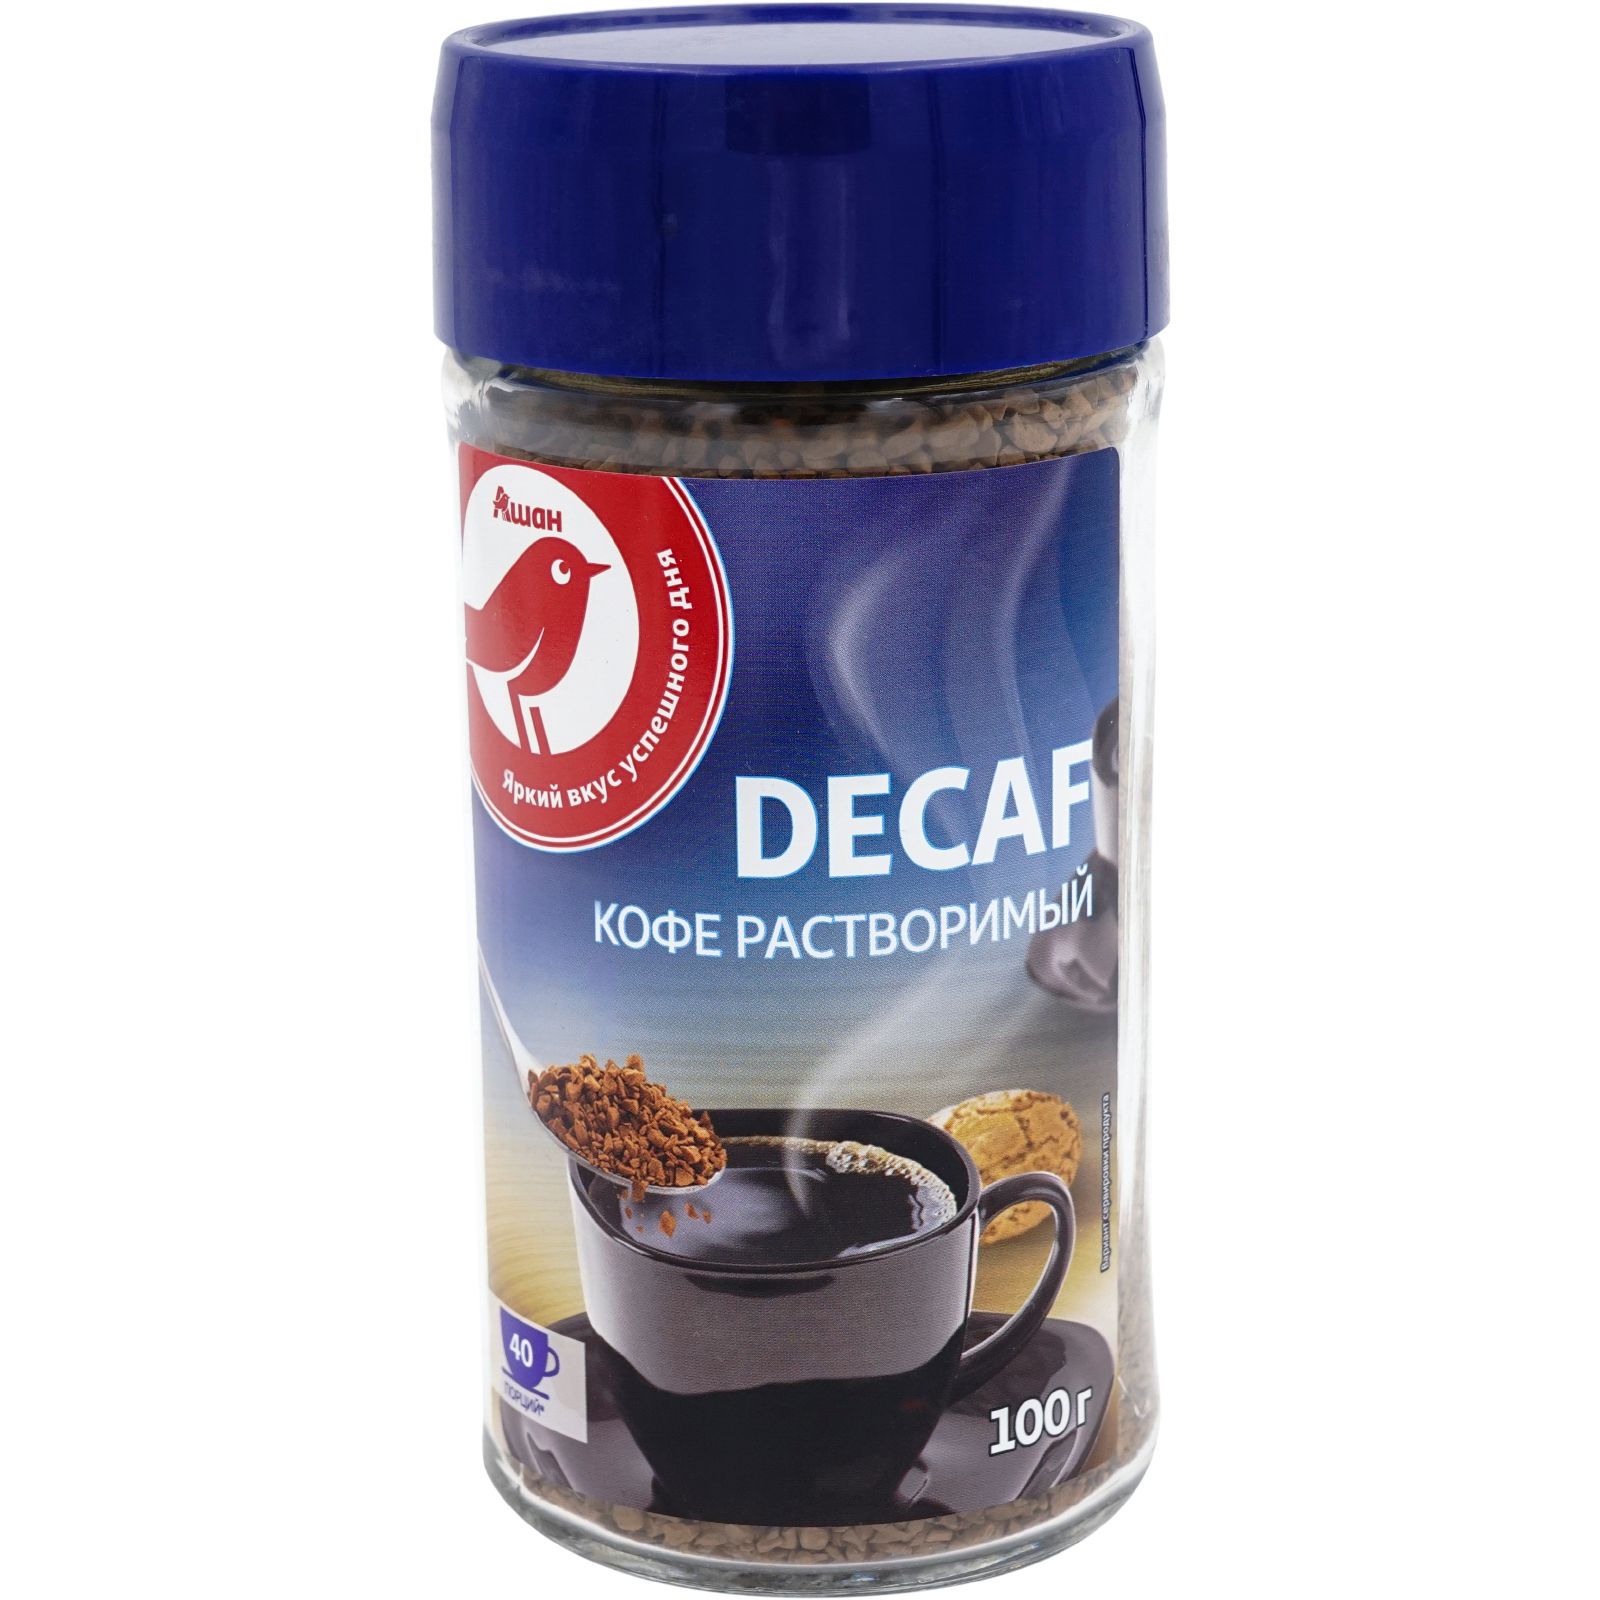 Кофе АШАН Красная птица Decaf декофеинизированный молотый в растворимом 100 г